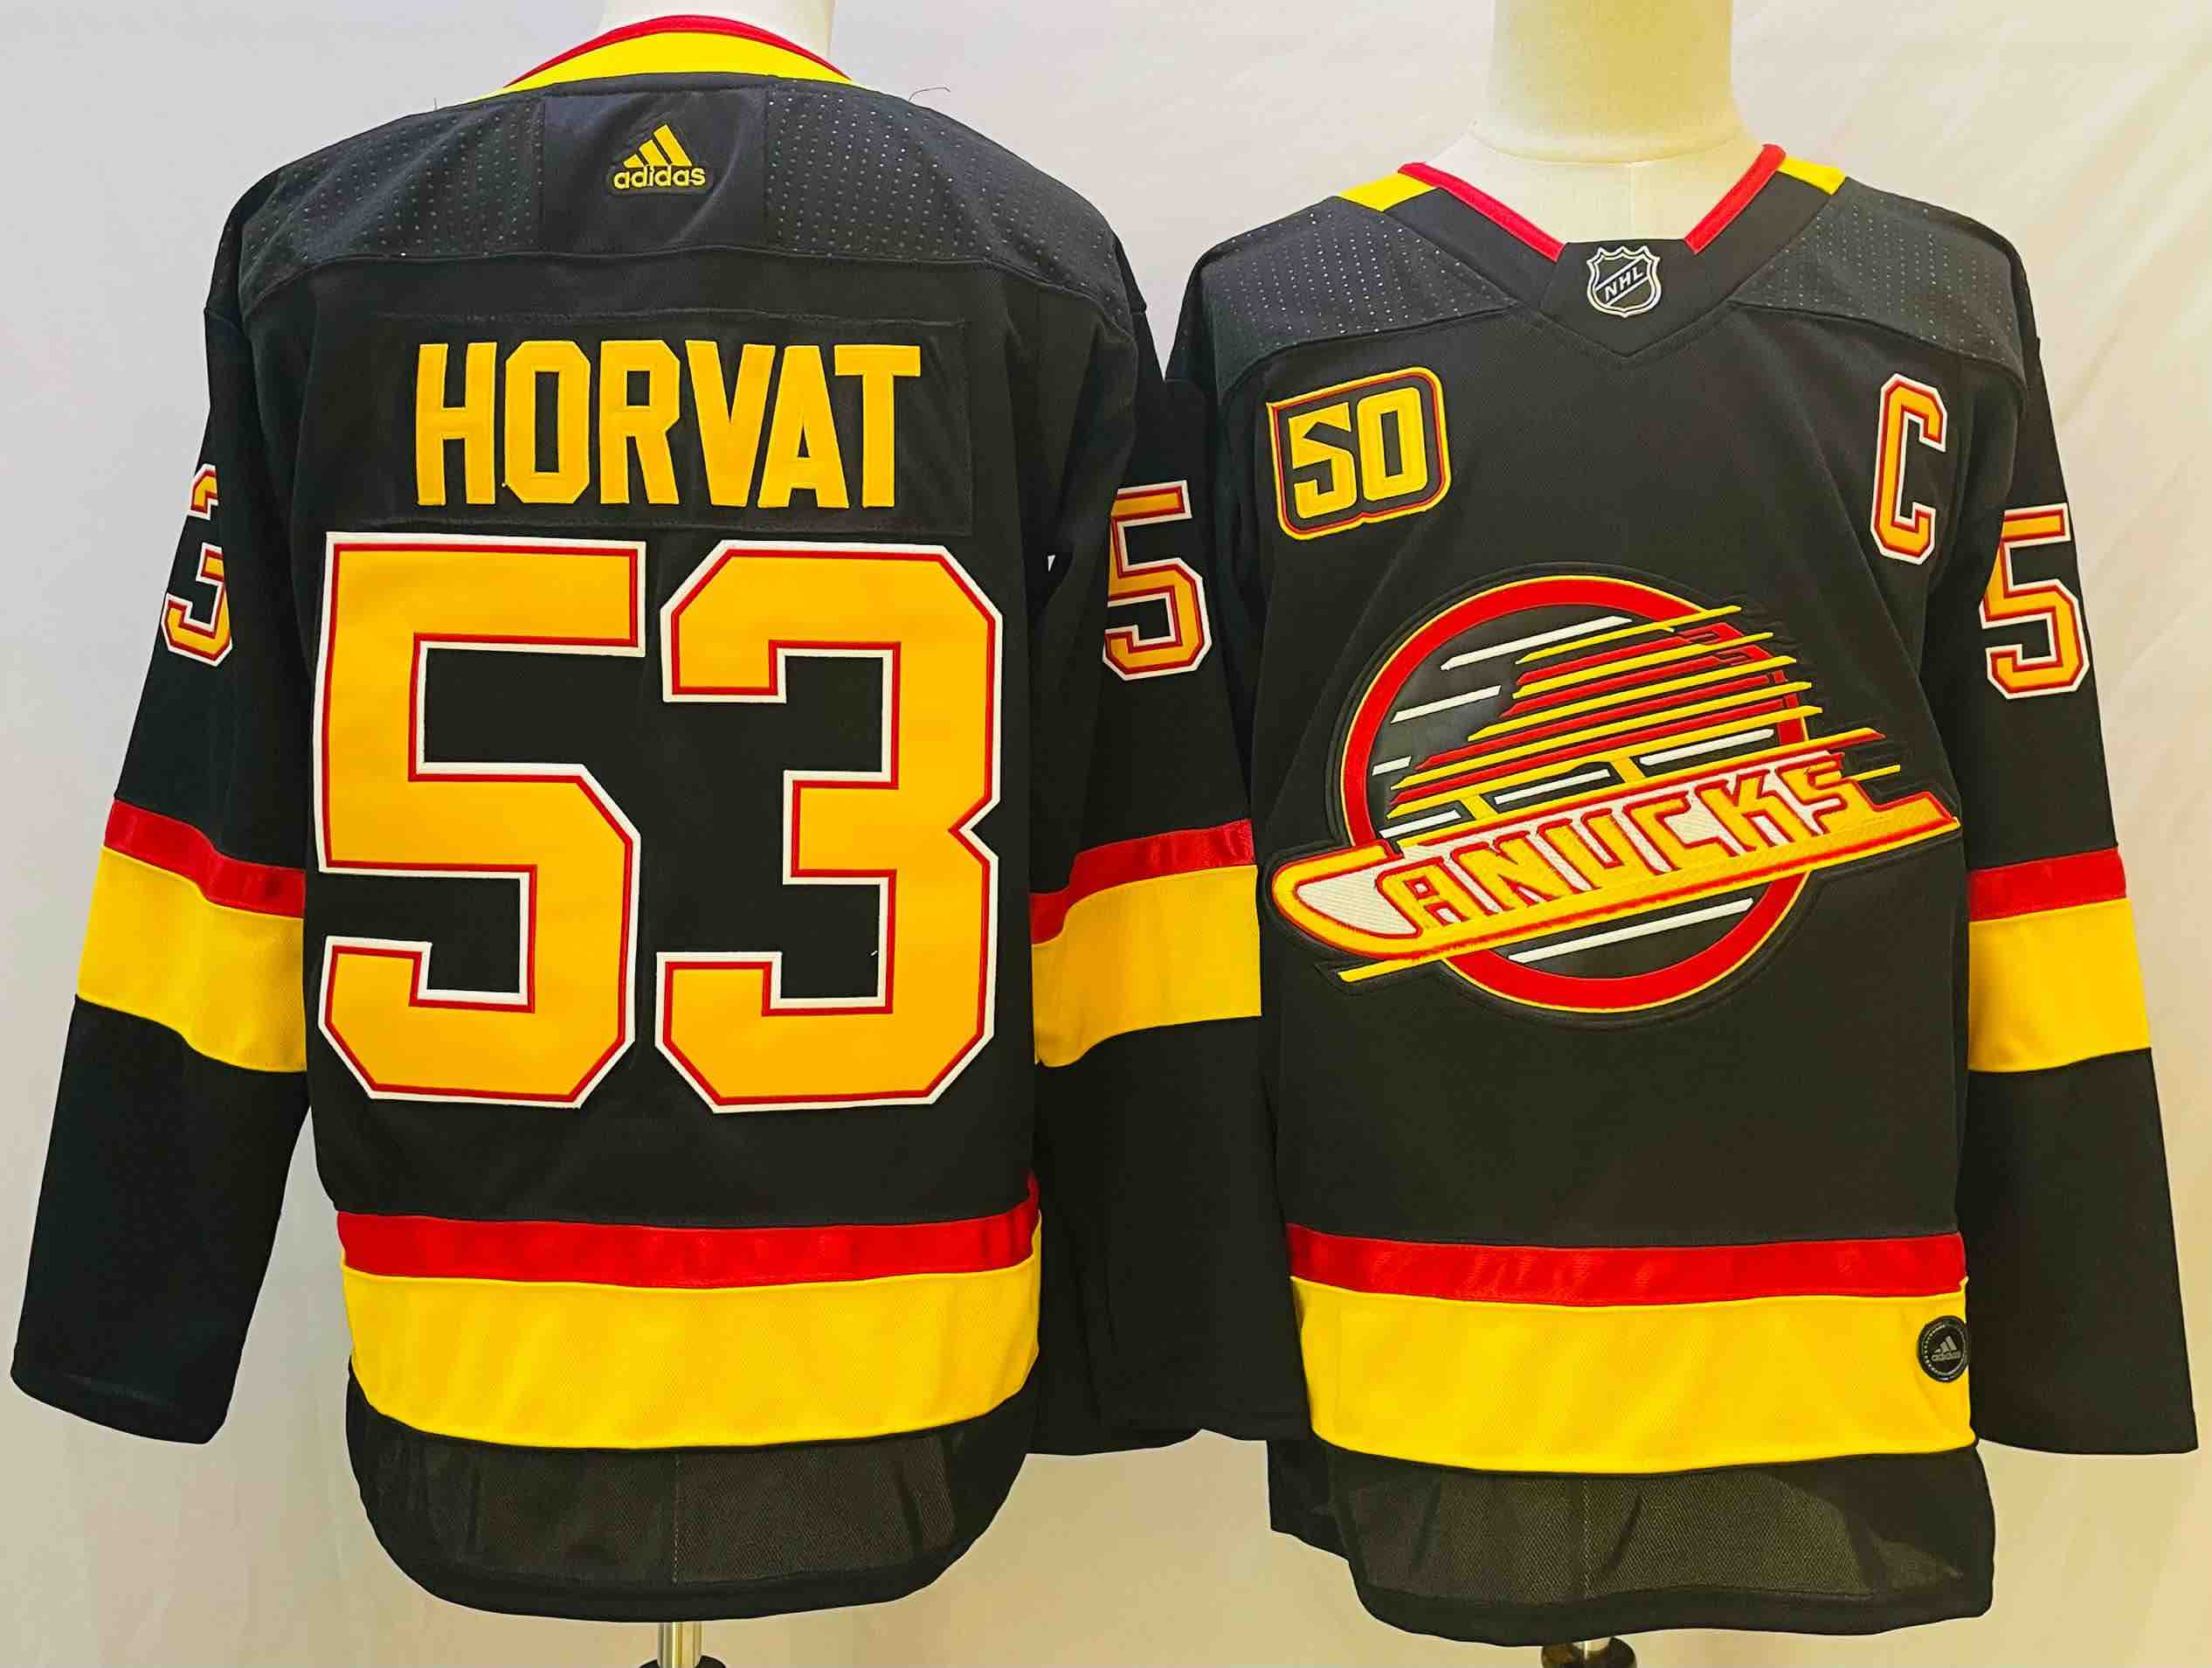 NHL Vancouver Canucks #53 Horvat Black Jersey